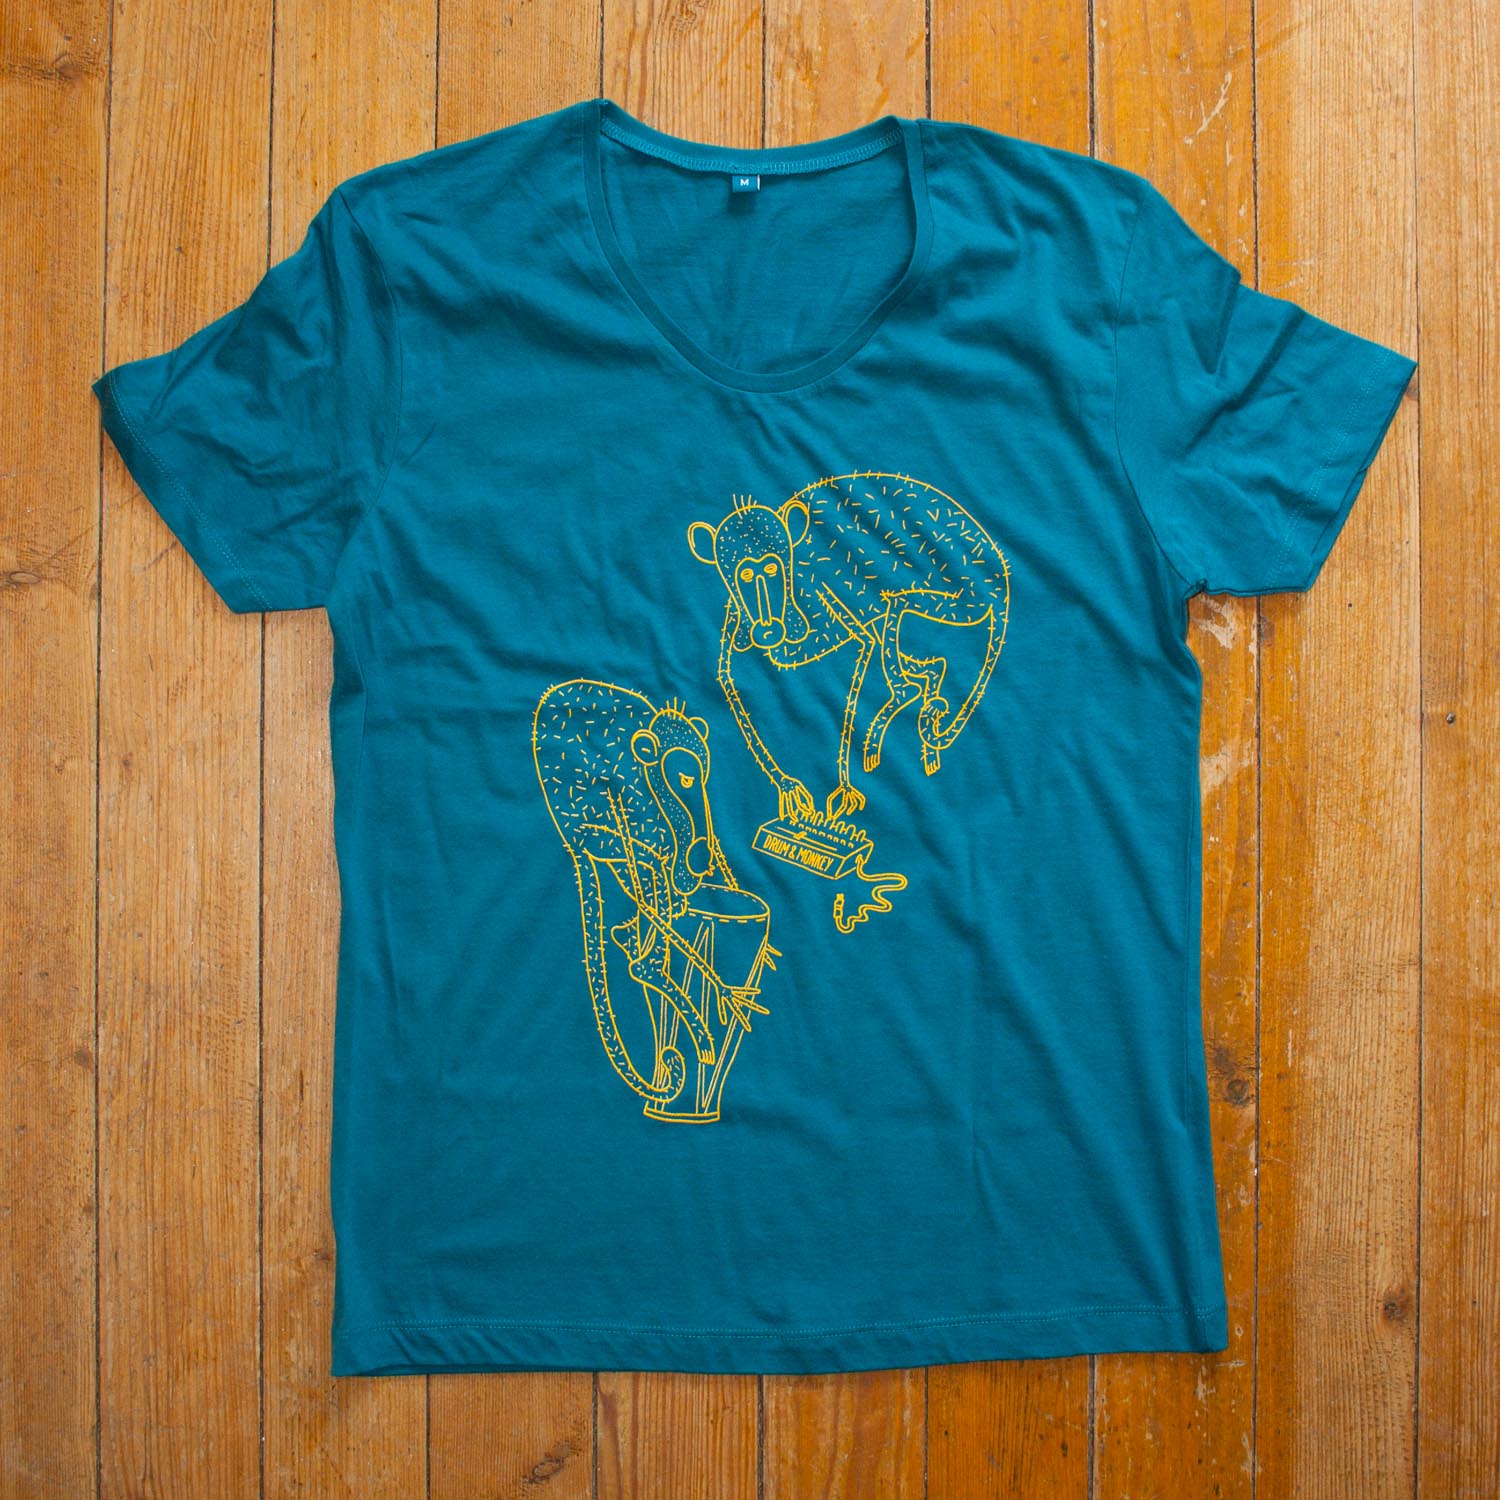 Drum and Monkey Apes T-Shirt Siebdruck-Verfahren